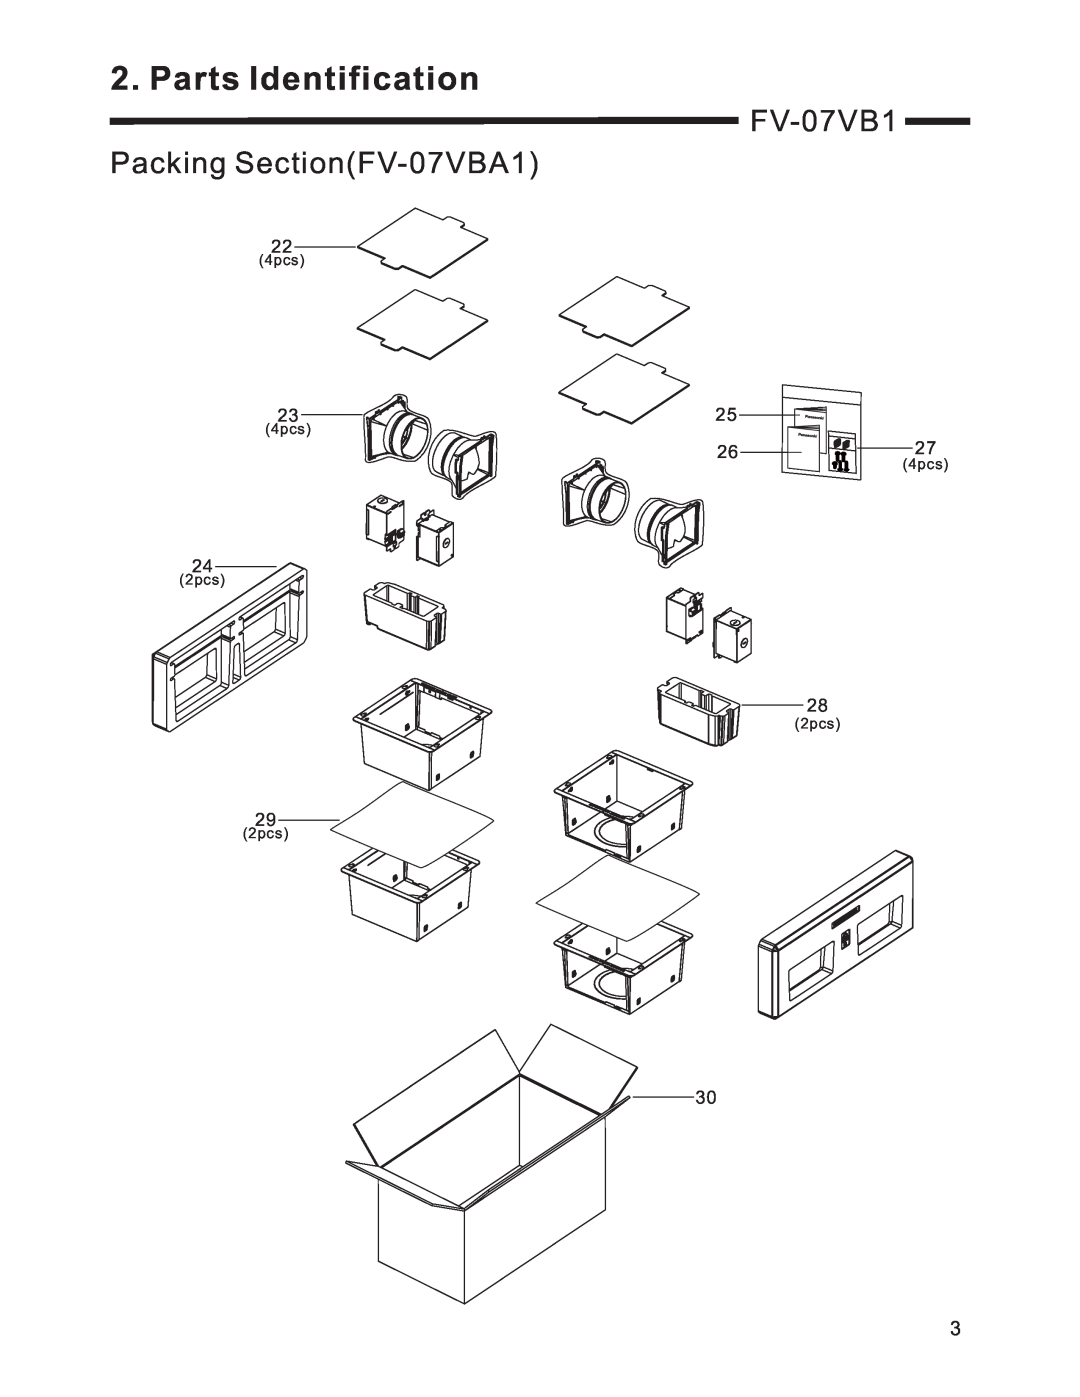 Panasonic FV-07VB1 service manual Packing SectionFV-07VBA1, Parts Identification, 4pcs, 2pcs 